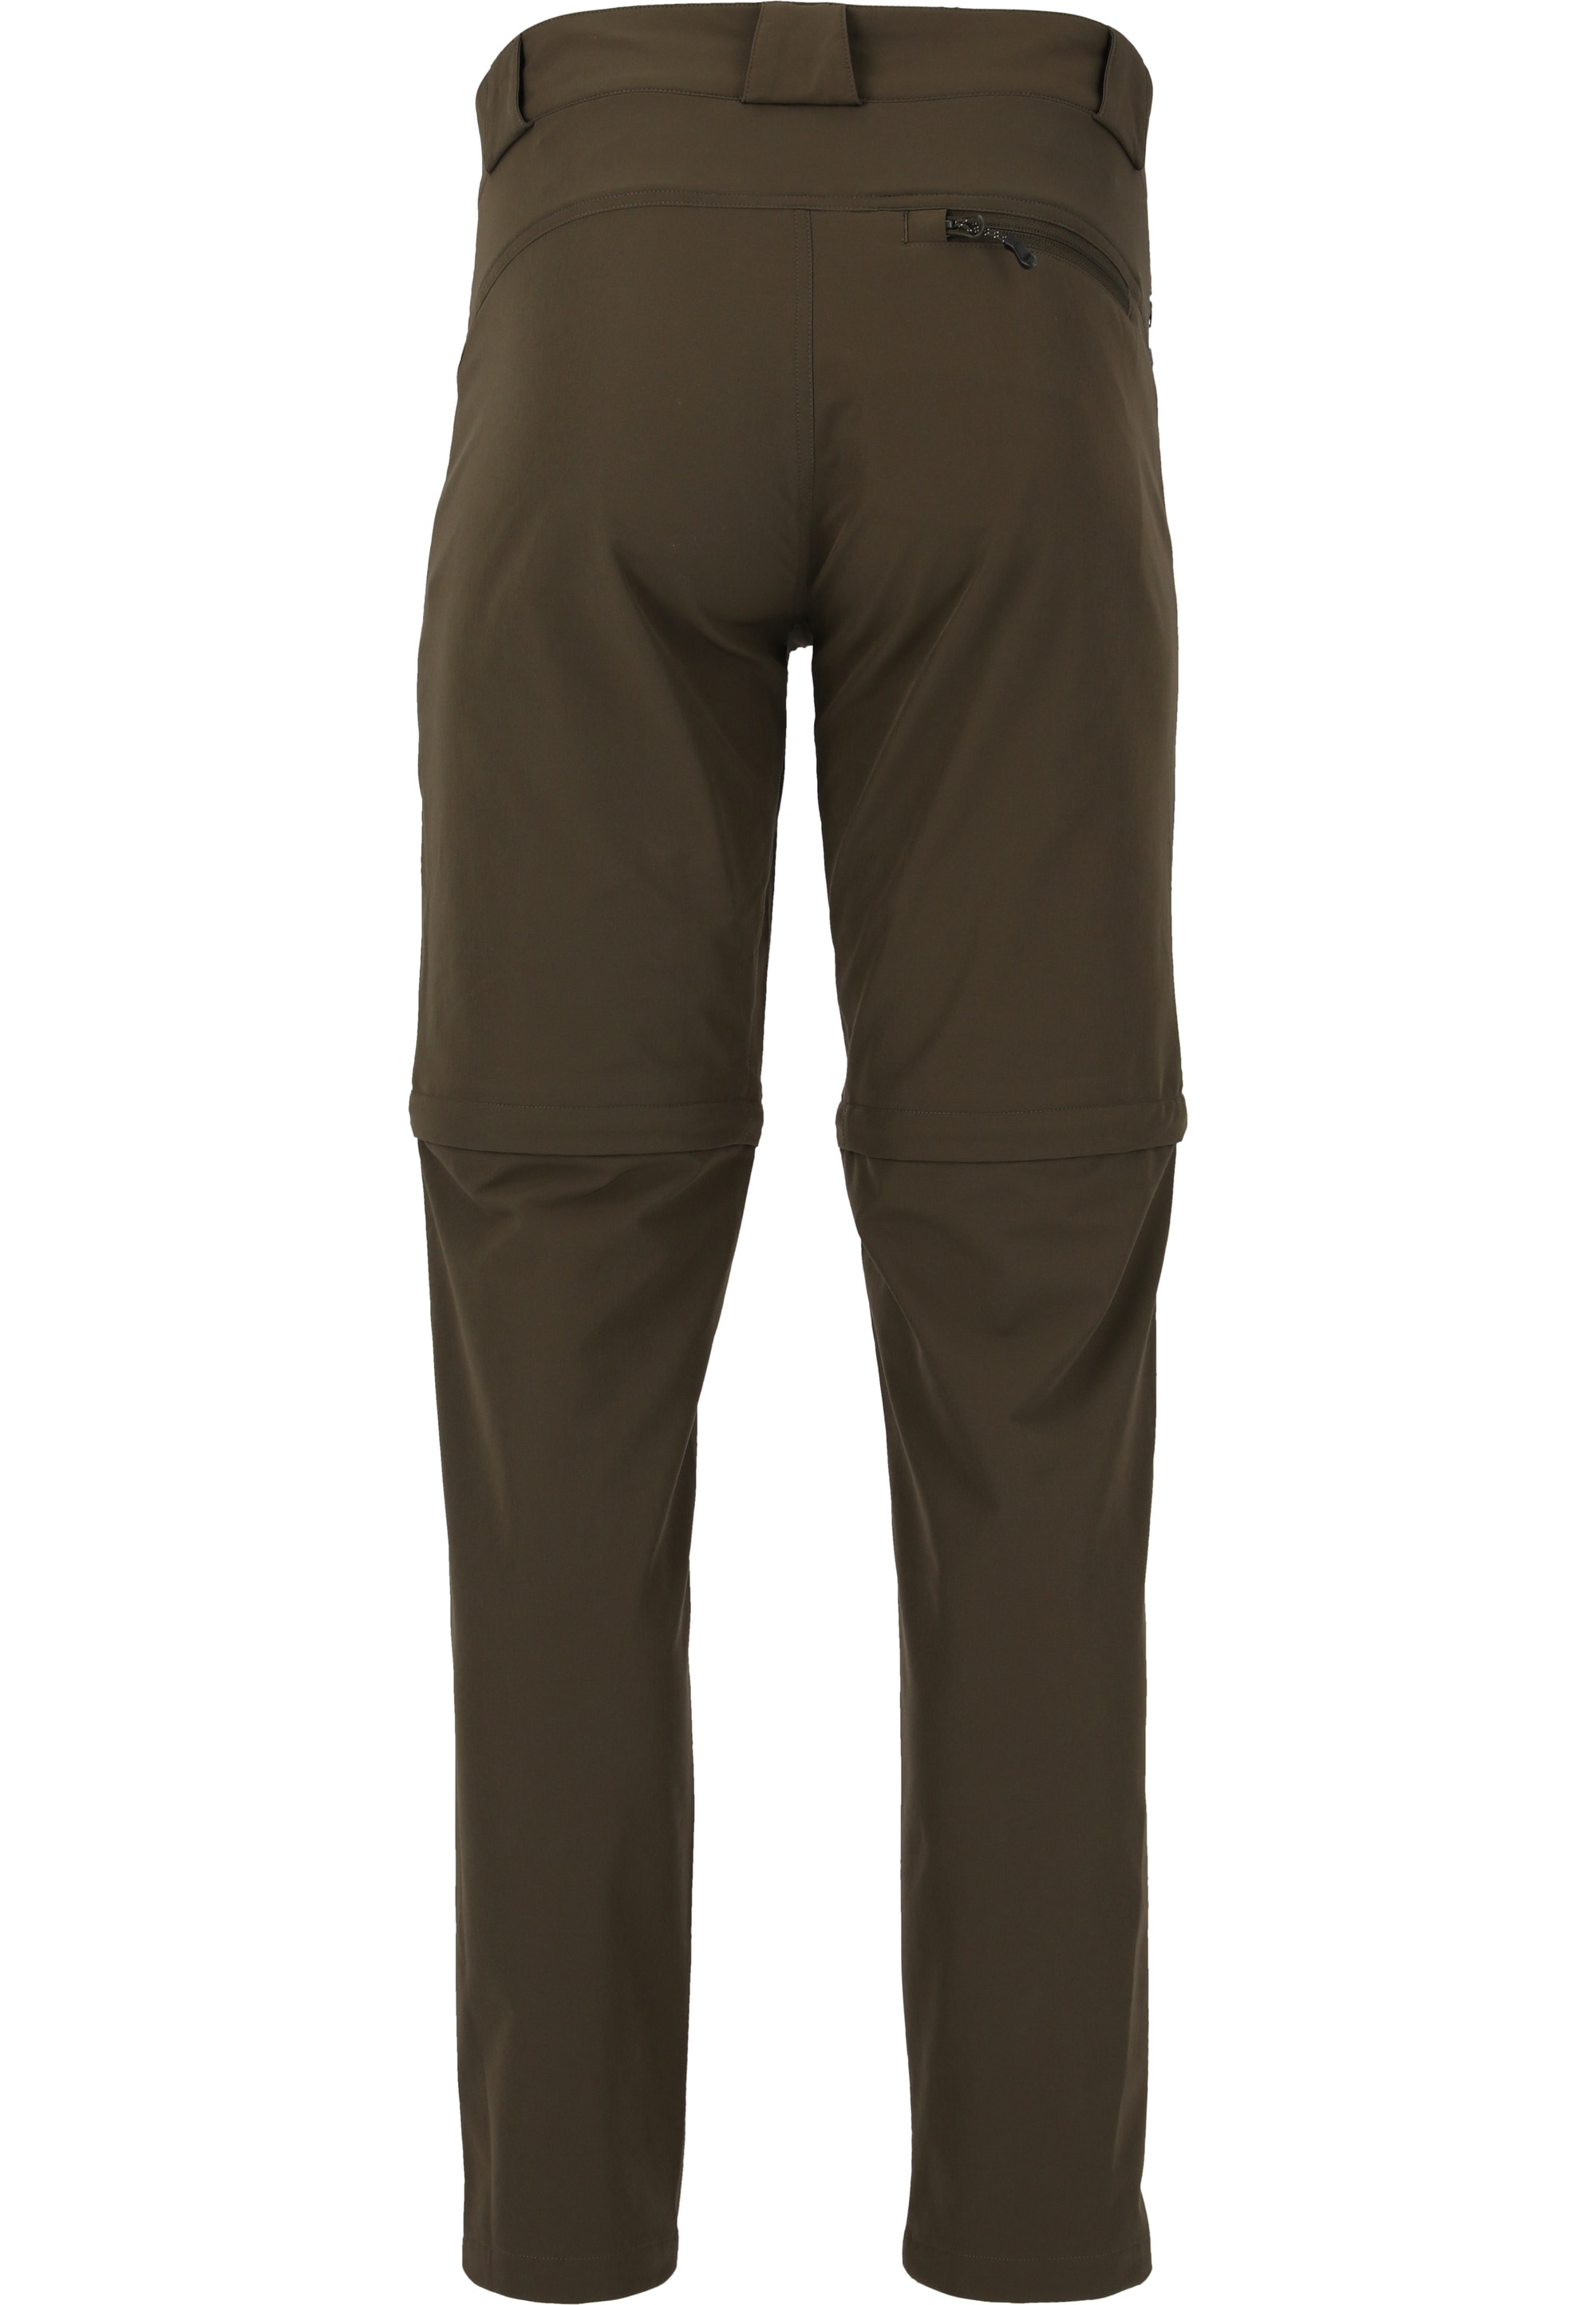 WHISTLER Outdoorhose »Gerdi«, zur Verwendung als Hose oder Shorts dank Zip-Off-Funktion